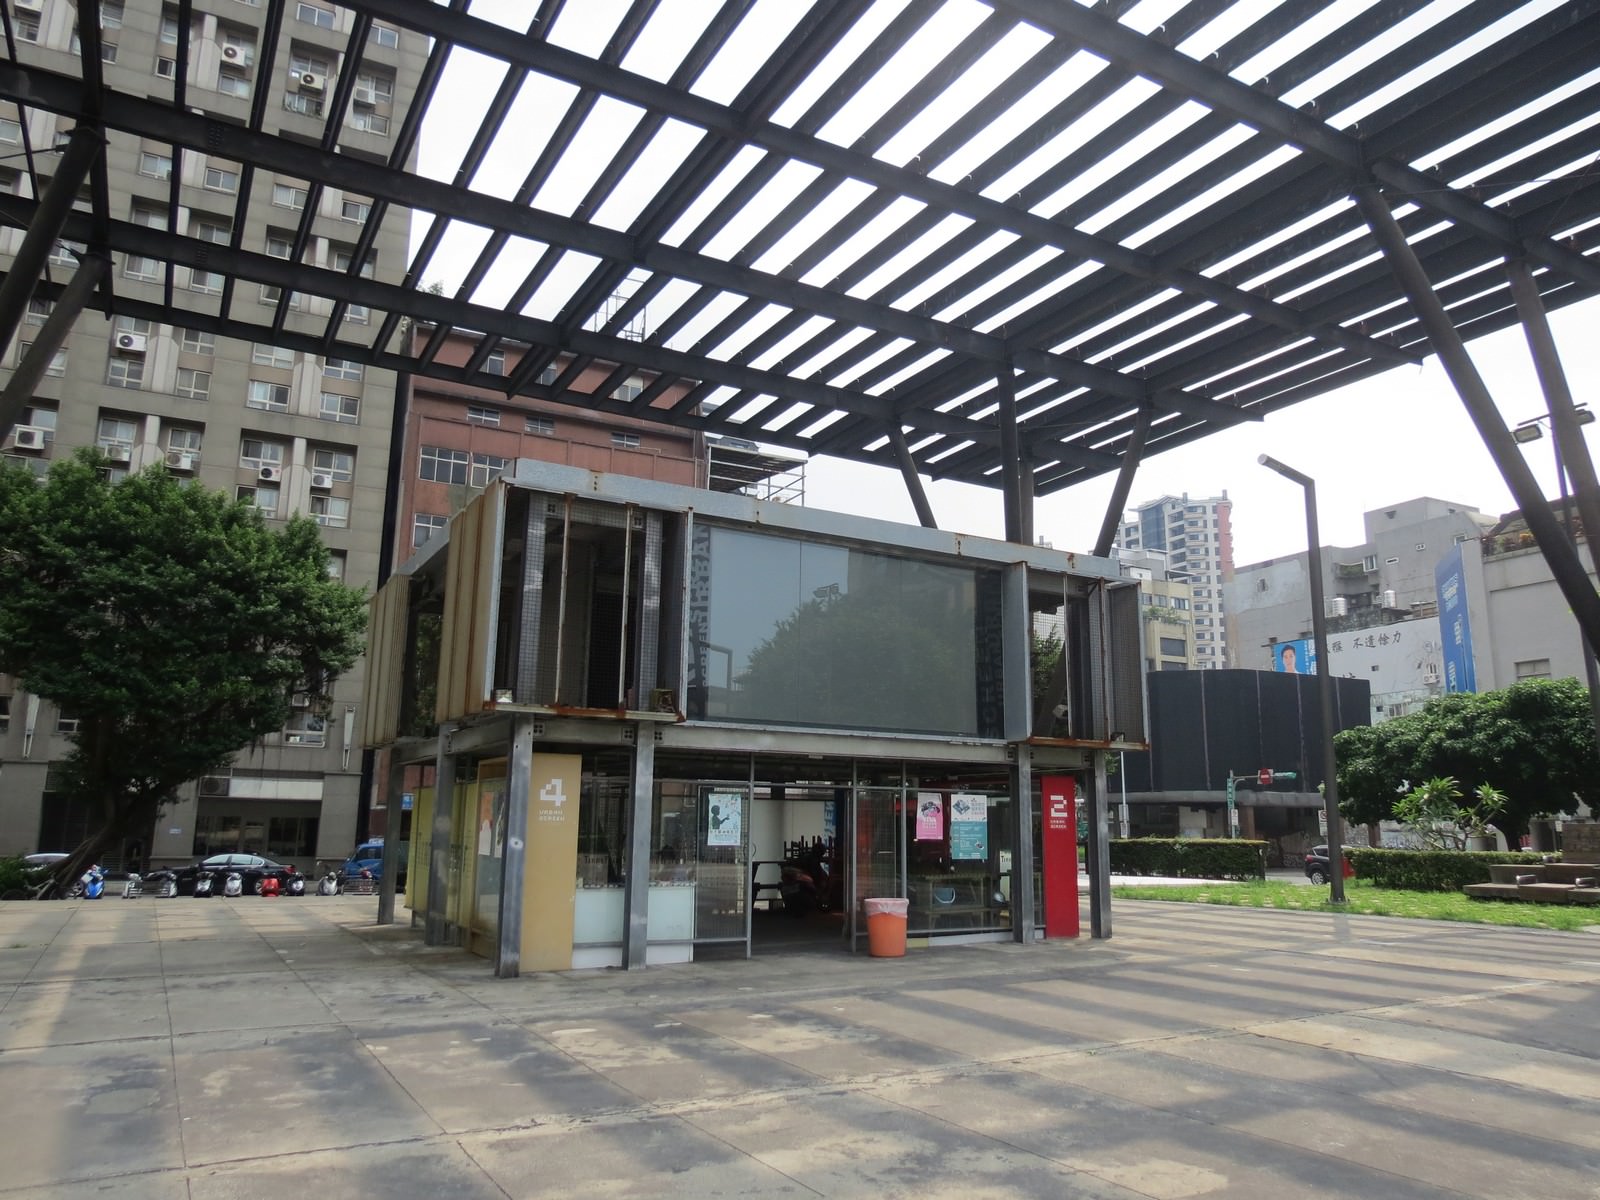 臺北市電影主題公園(Taipei Cinema Park)